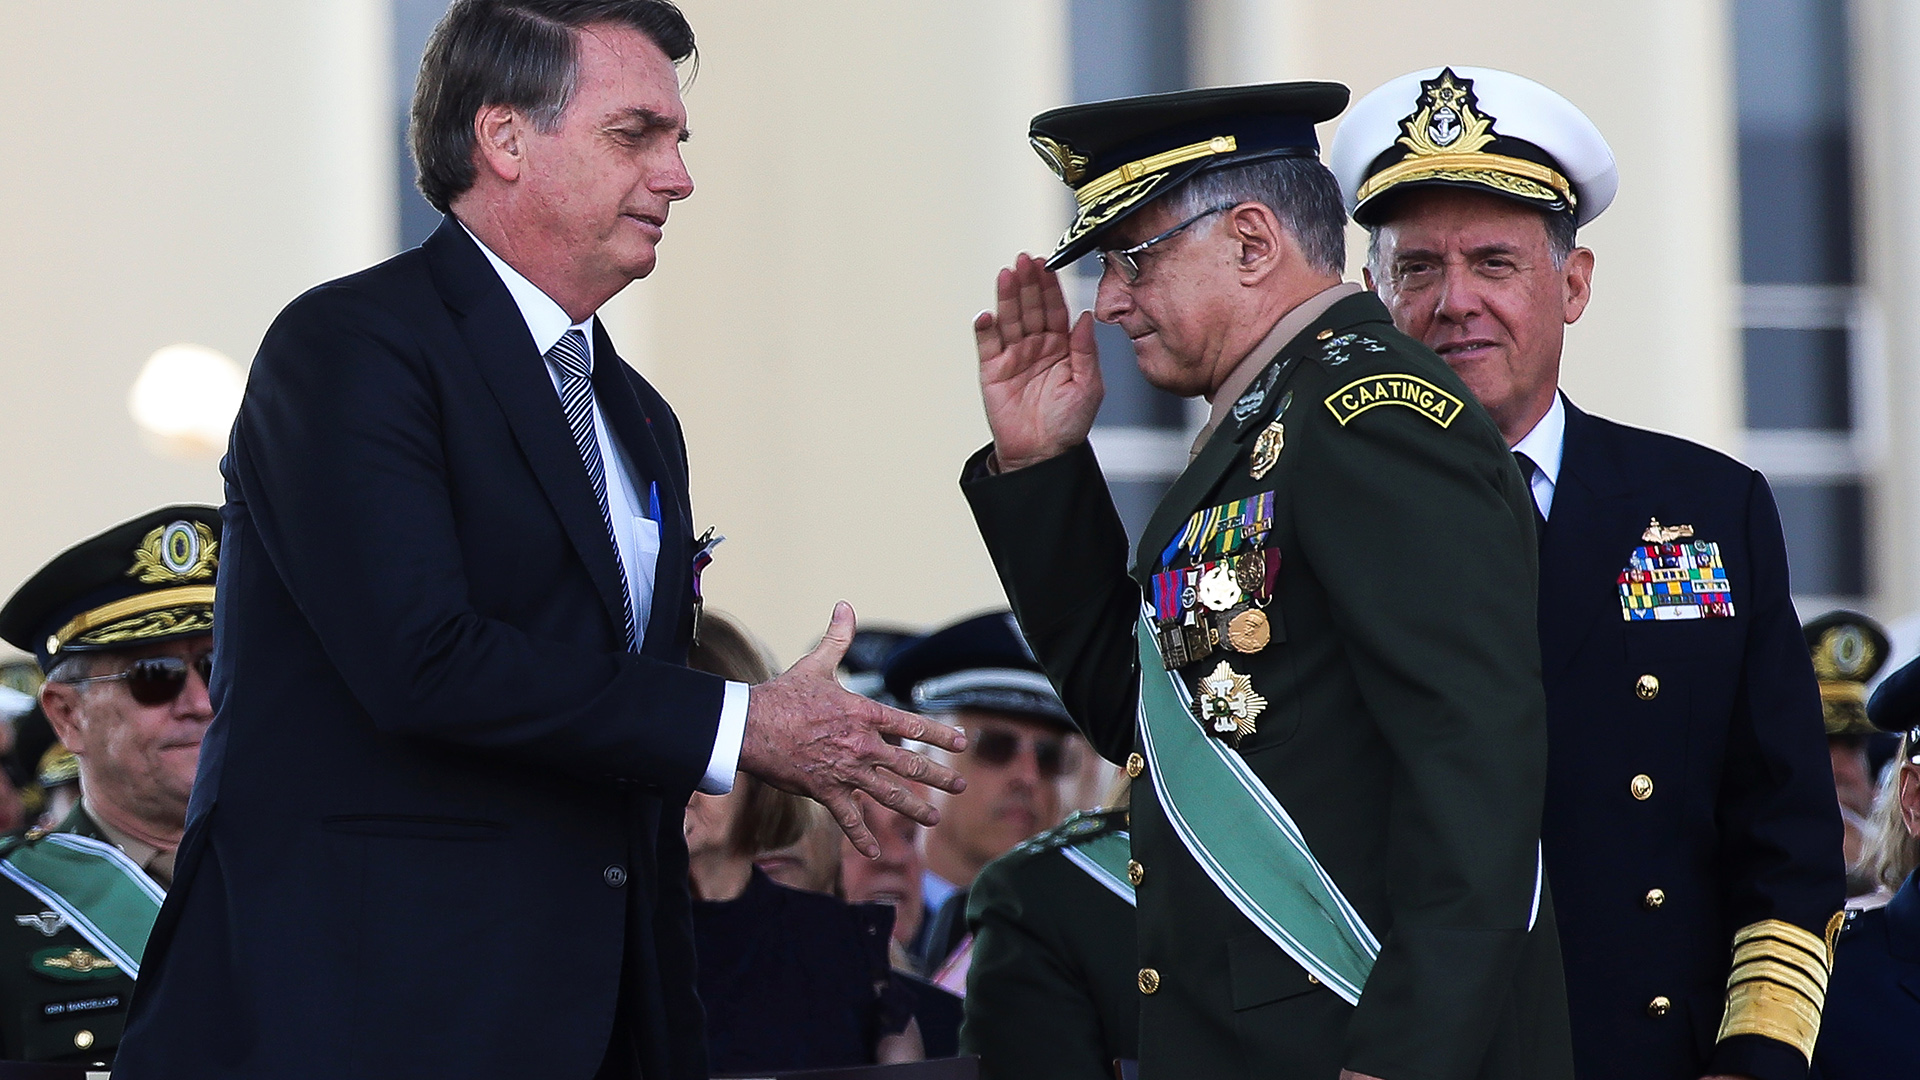 Jair Bolsonaro (links) beim Händeschütteln mit dem General Edson Leal Pujol (mitte) der Armee, Archivbild vom 23. August 2019| Bildquelle: EPA